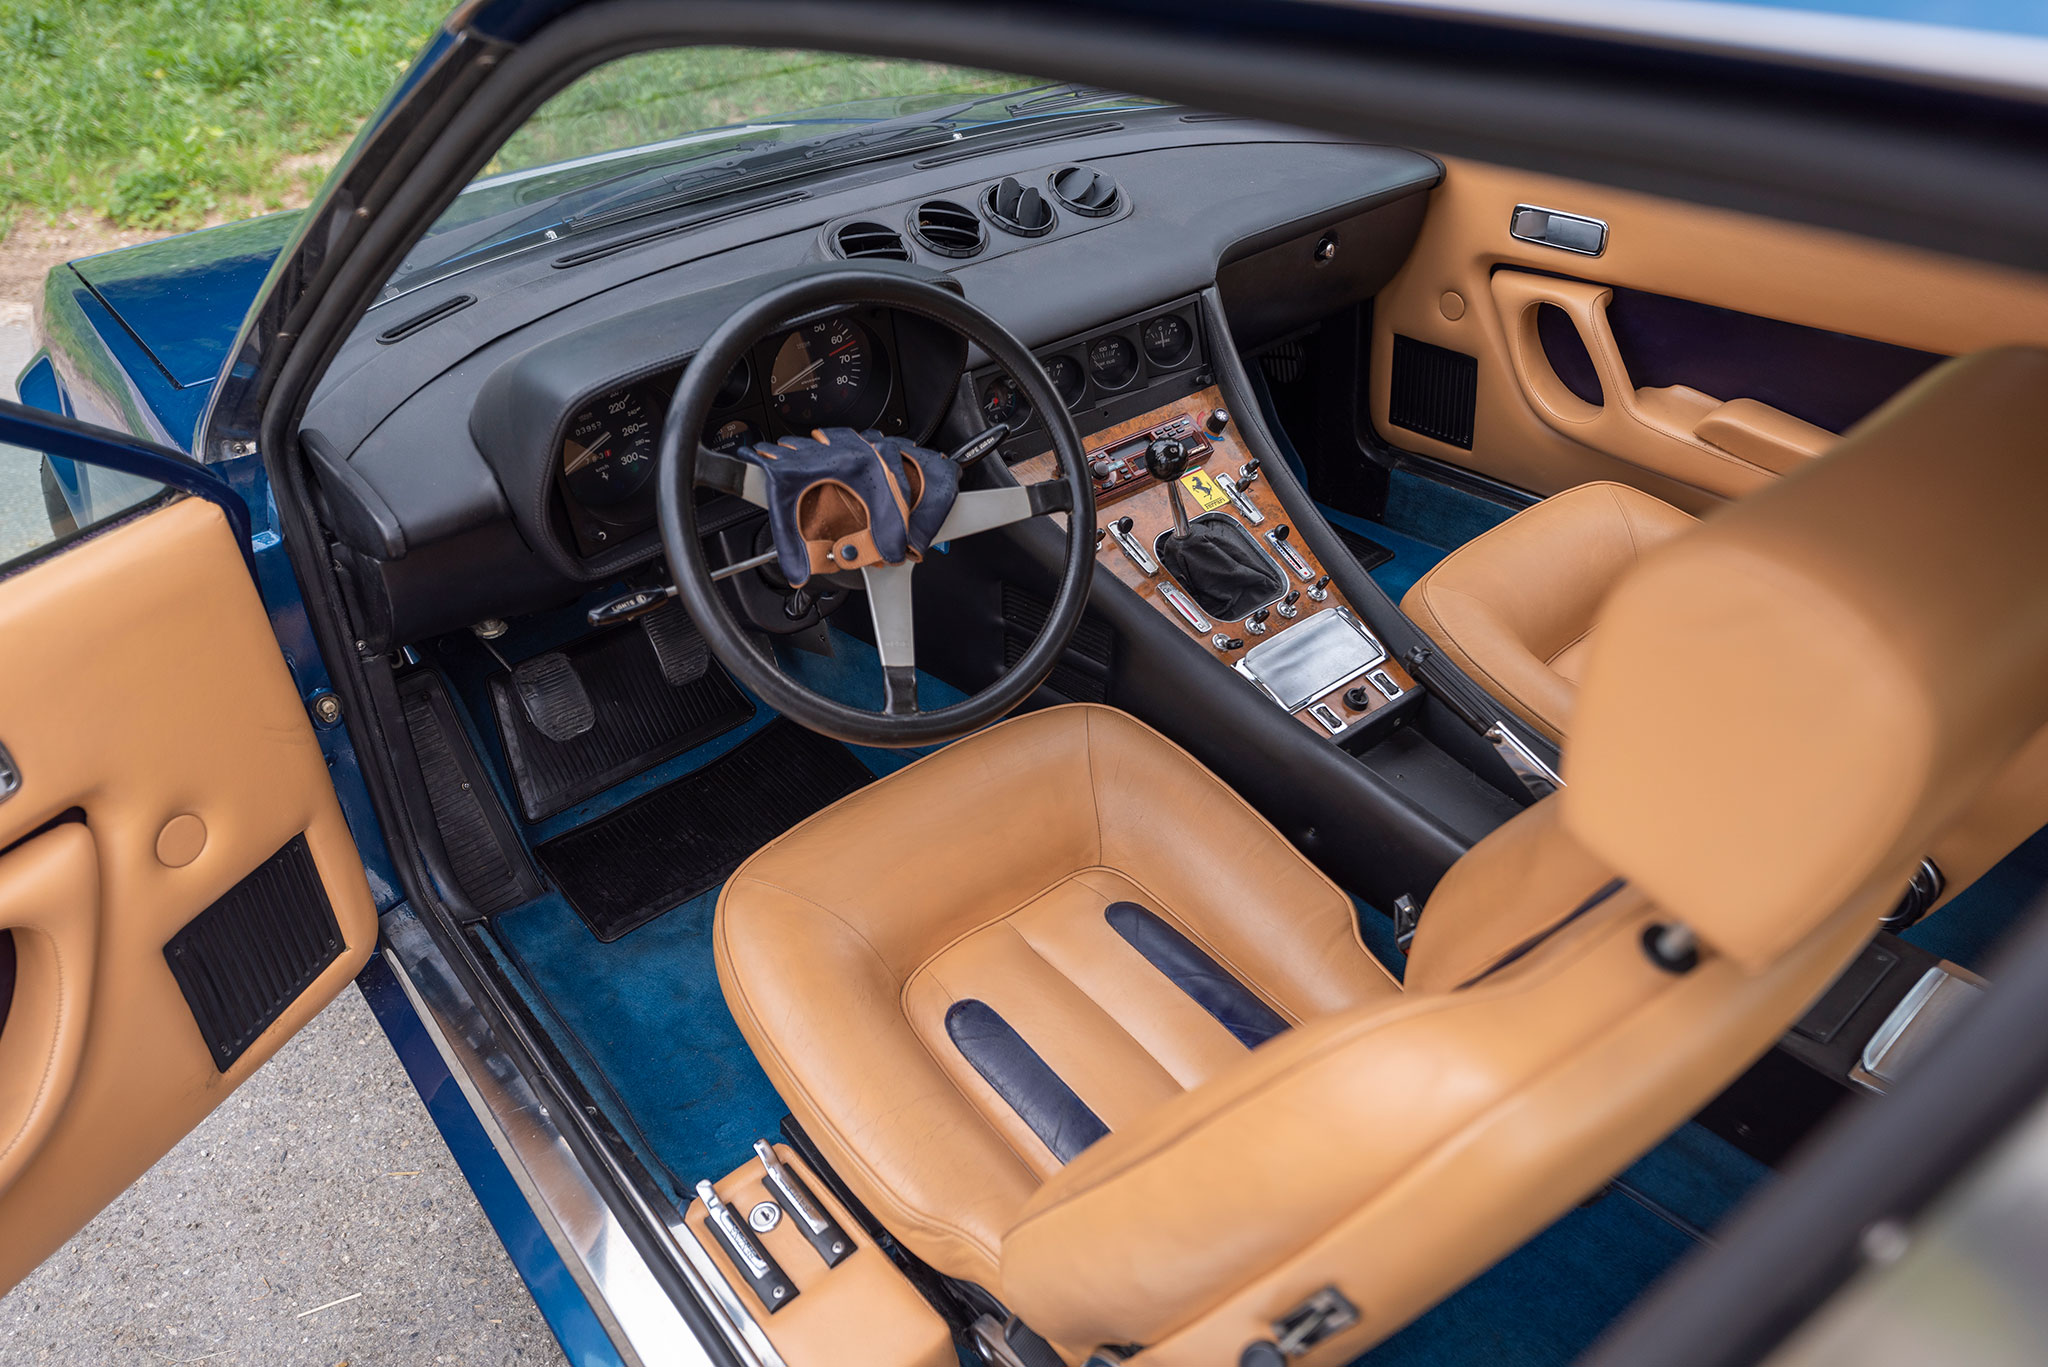 1980 Ferrari 400i un liseré bleu sur les sièges en cuir rappelle la couleur de la voiture.